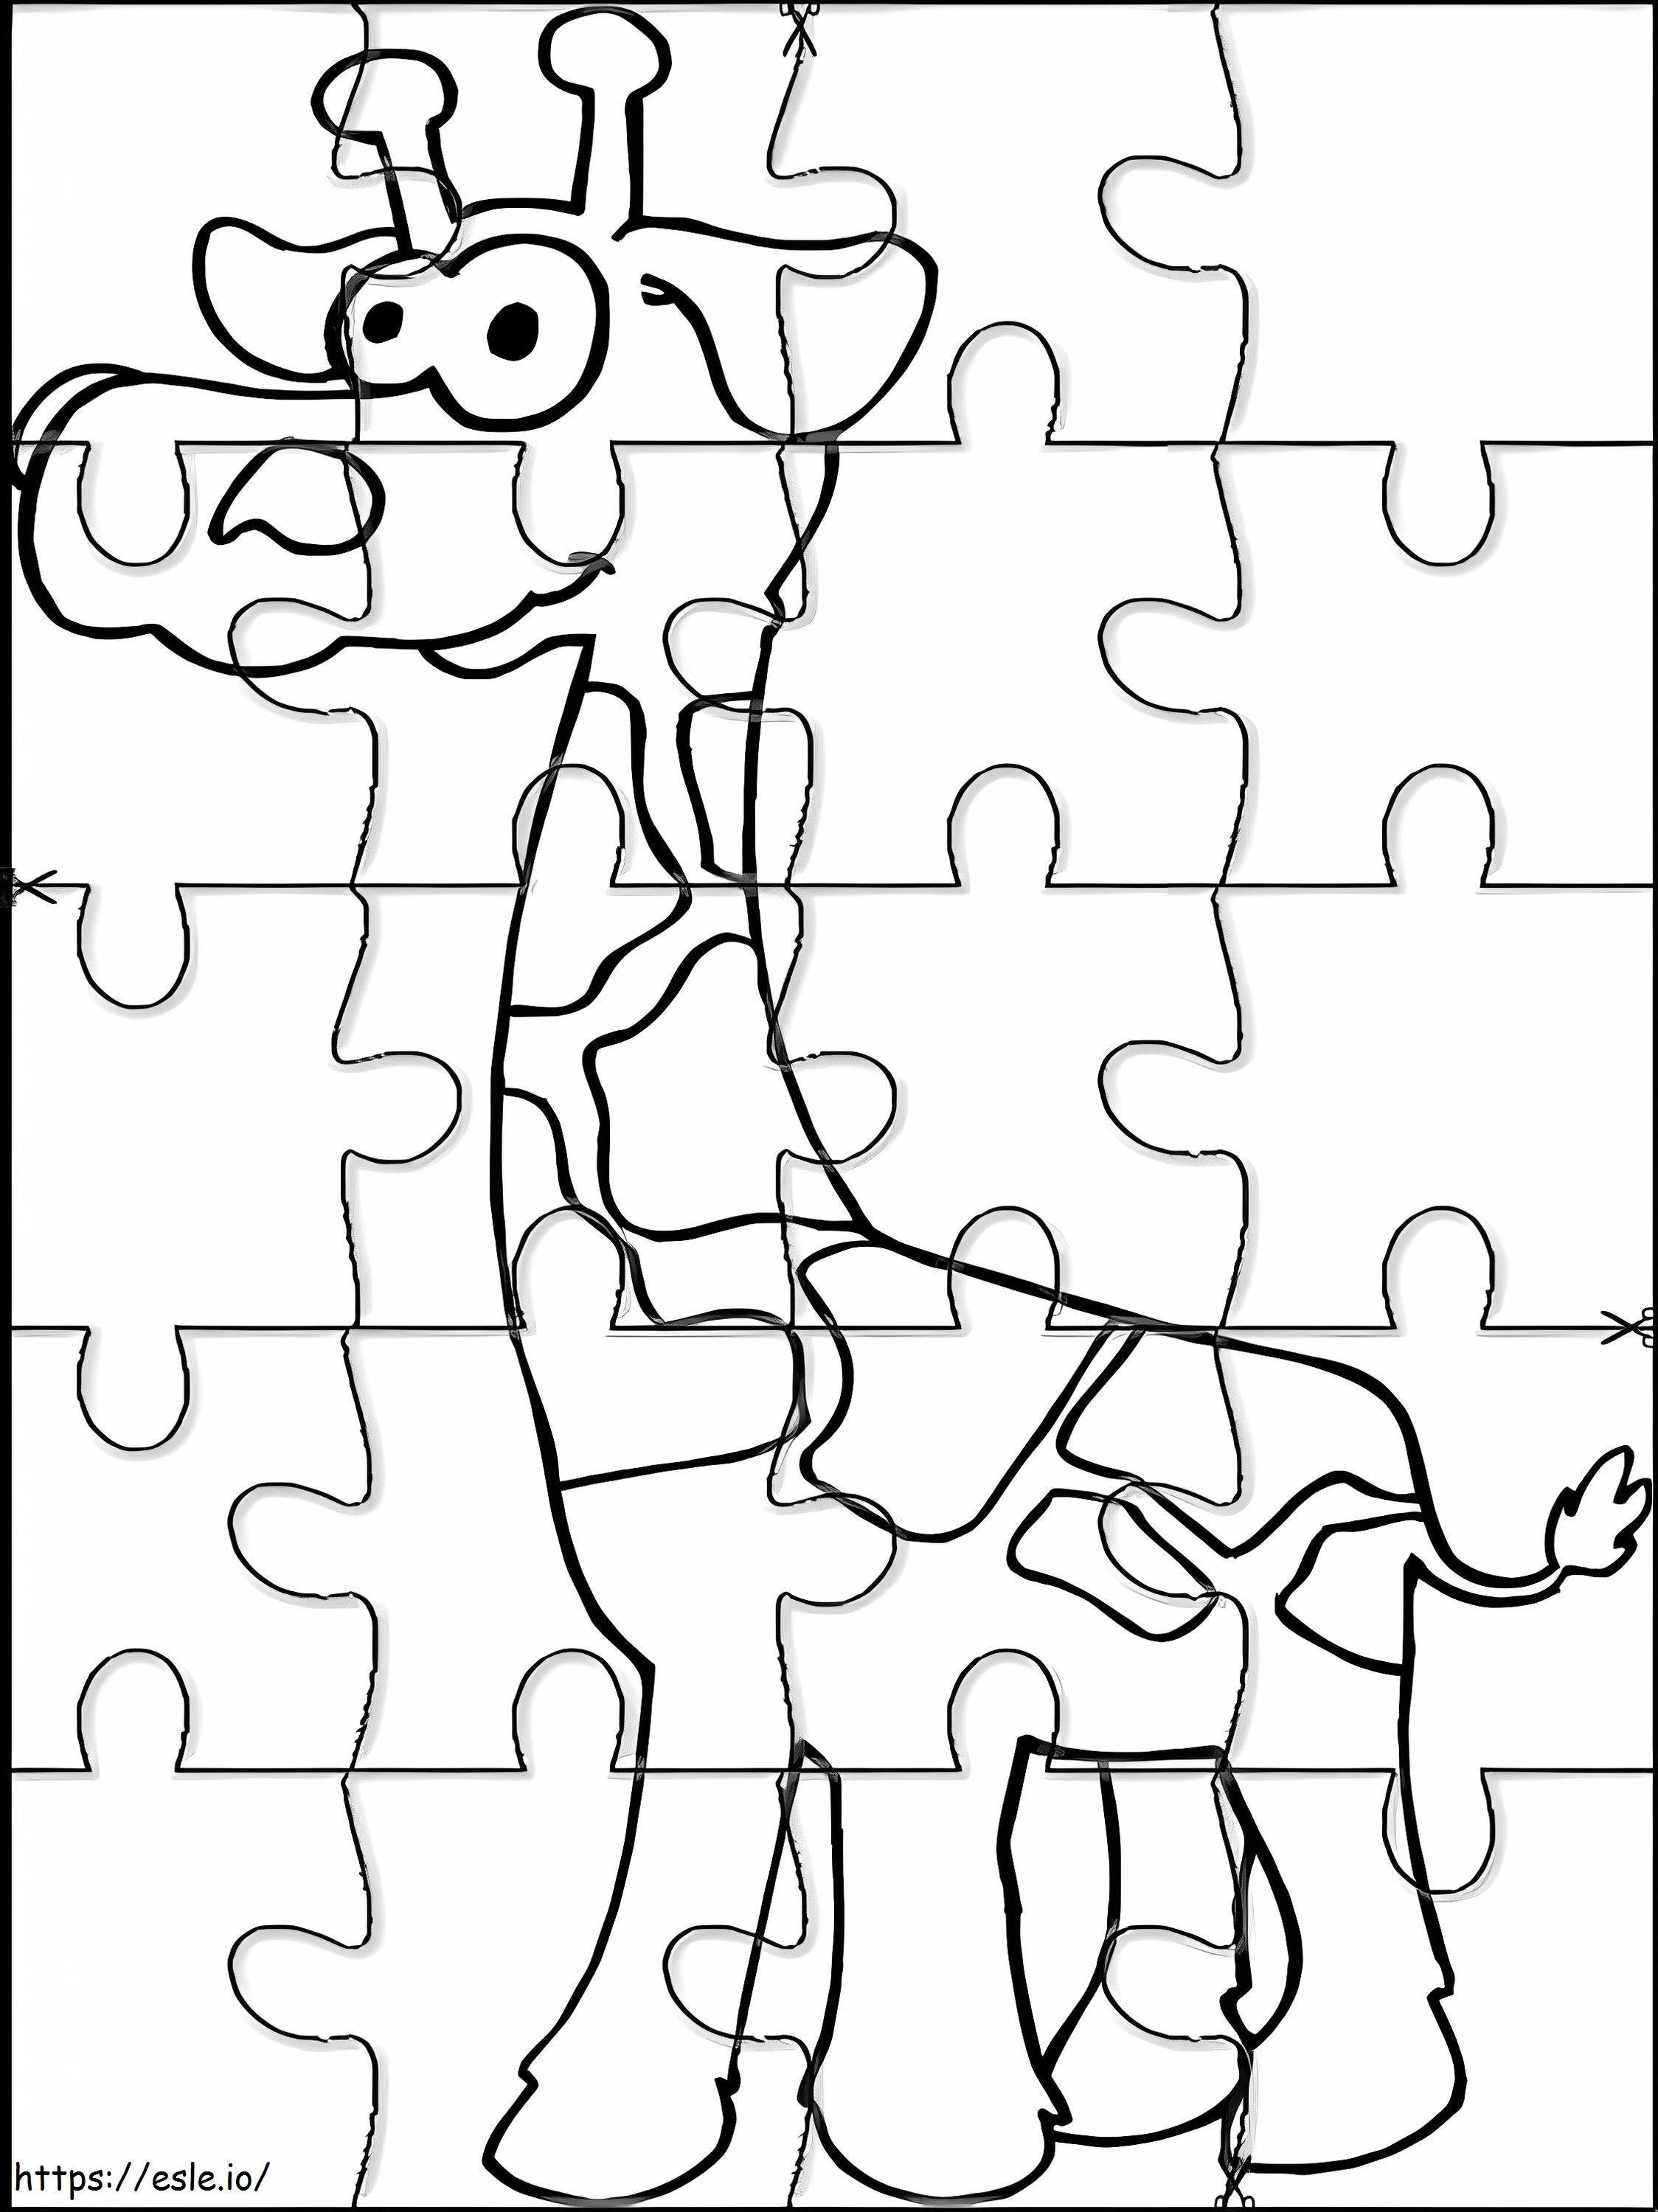 Puzzle z żyrafą kolorowanka